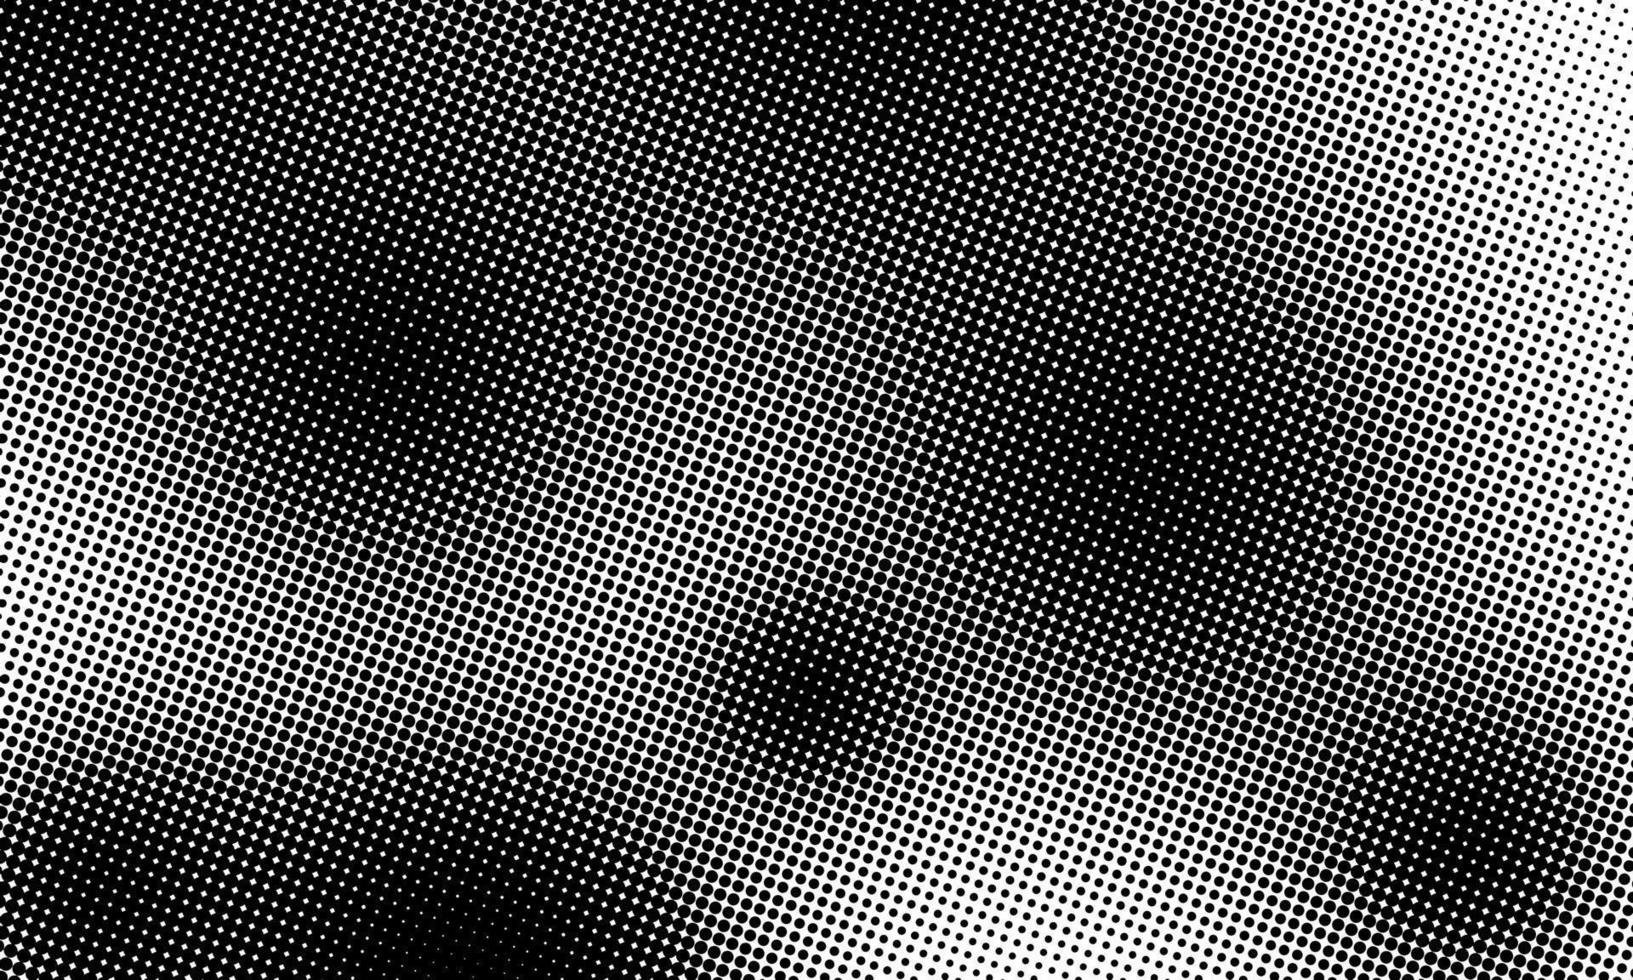 Vektor Halbton Hintergrund. Halbton abstrakt Hintergrund. Vektor Illustration. schwarz und Weiß Halbton Textur von Punkte